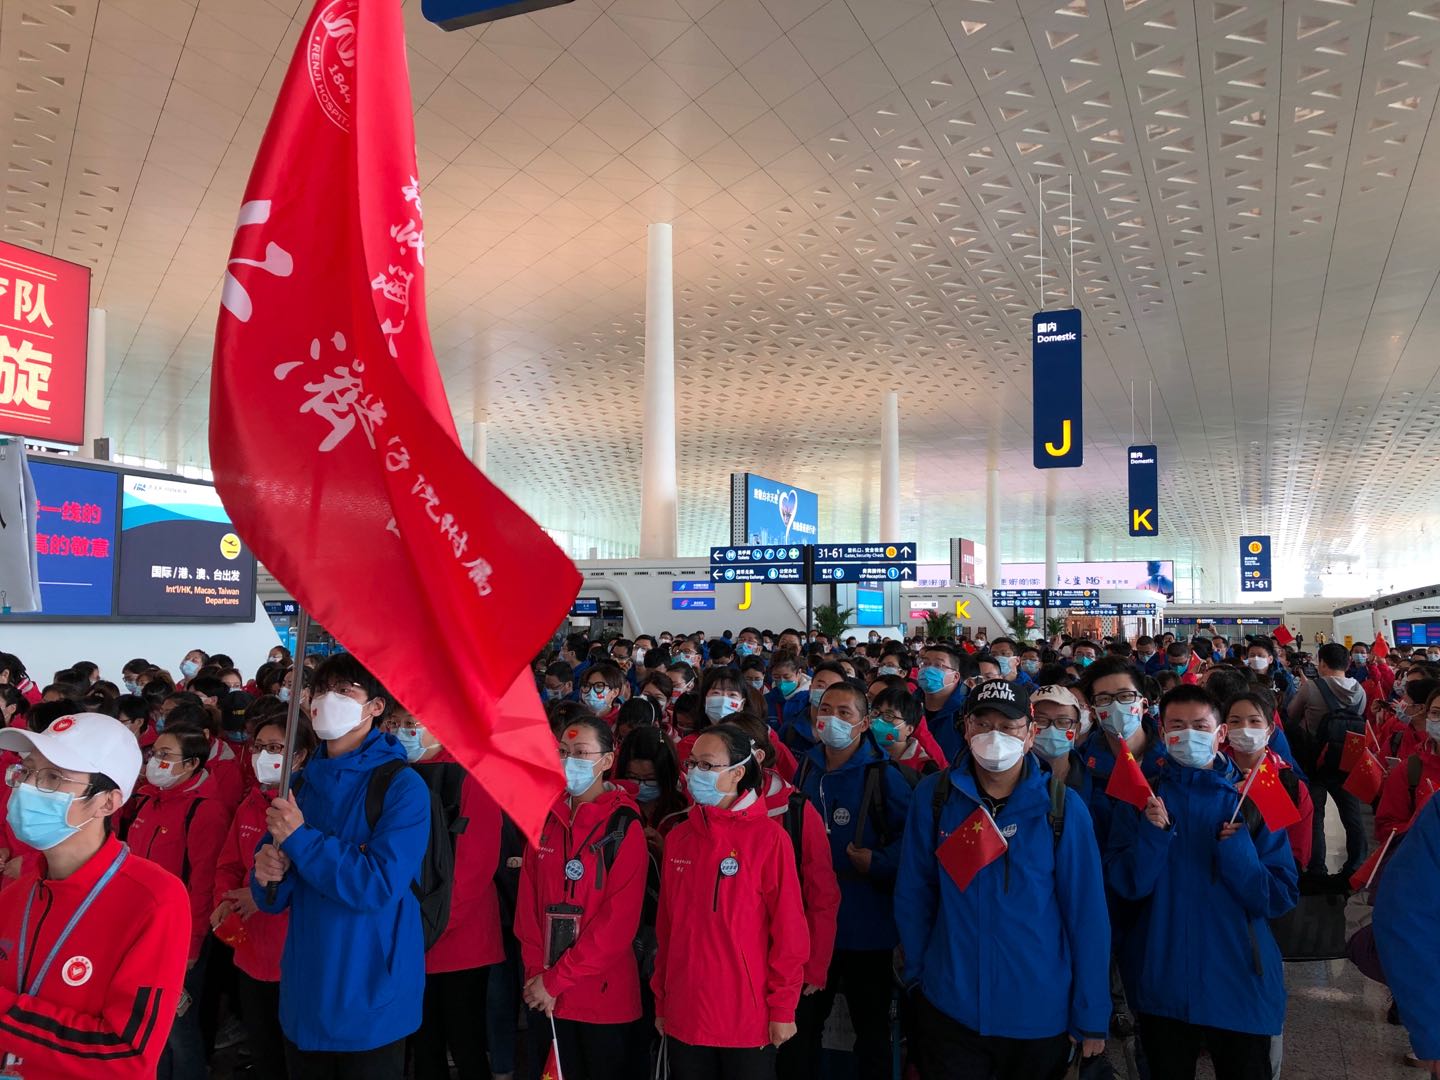 上海支援湖北医疗队员在武汉天河机场,准备出发仁济医院 供图